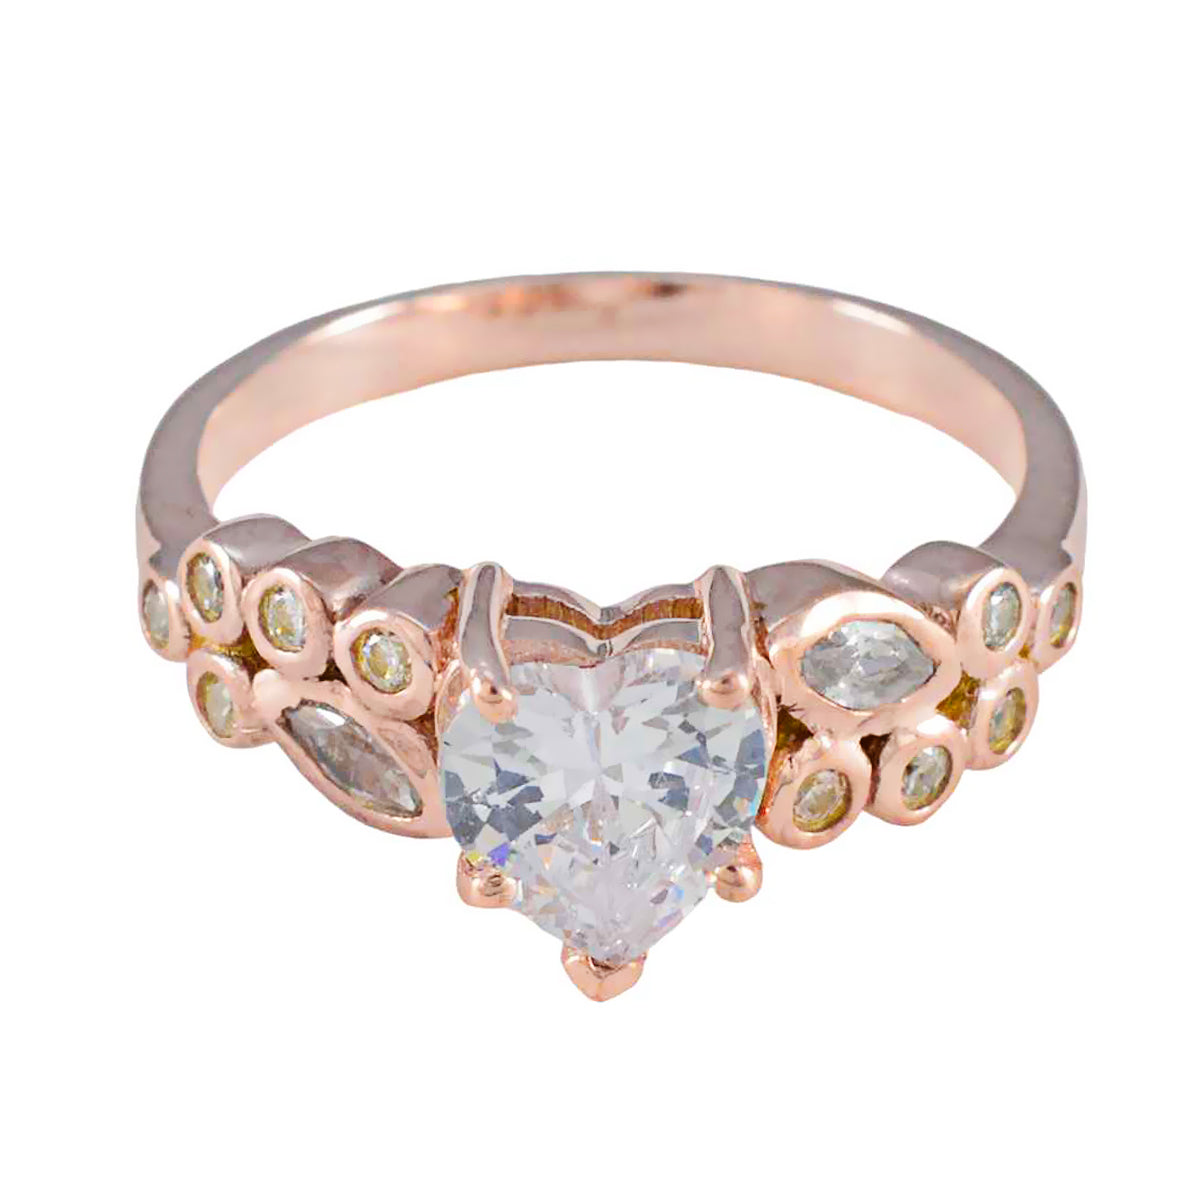 Riyo Choice zilveren ring met roségouden witte CZ-steen hartvormige griffenzetting bruidssieraden kerstring